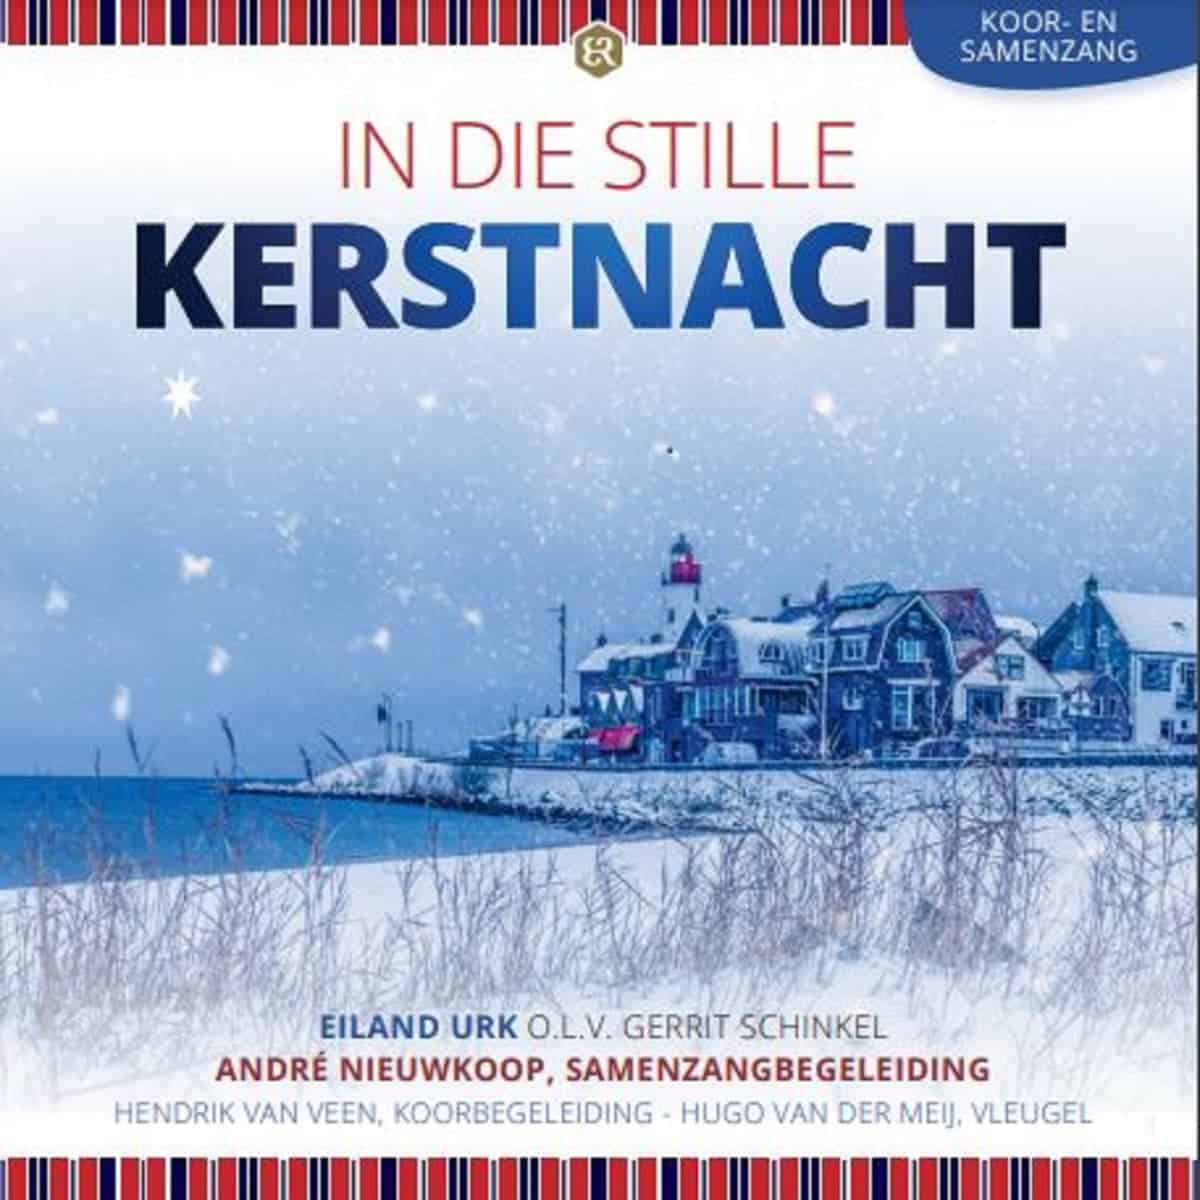 Cover image "In Die Stille Kerstnacht" by Eiland Urk